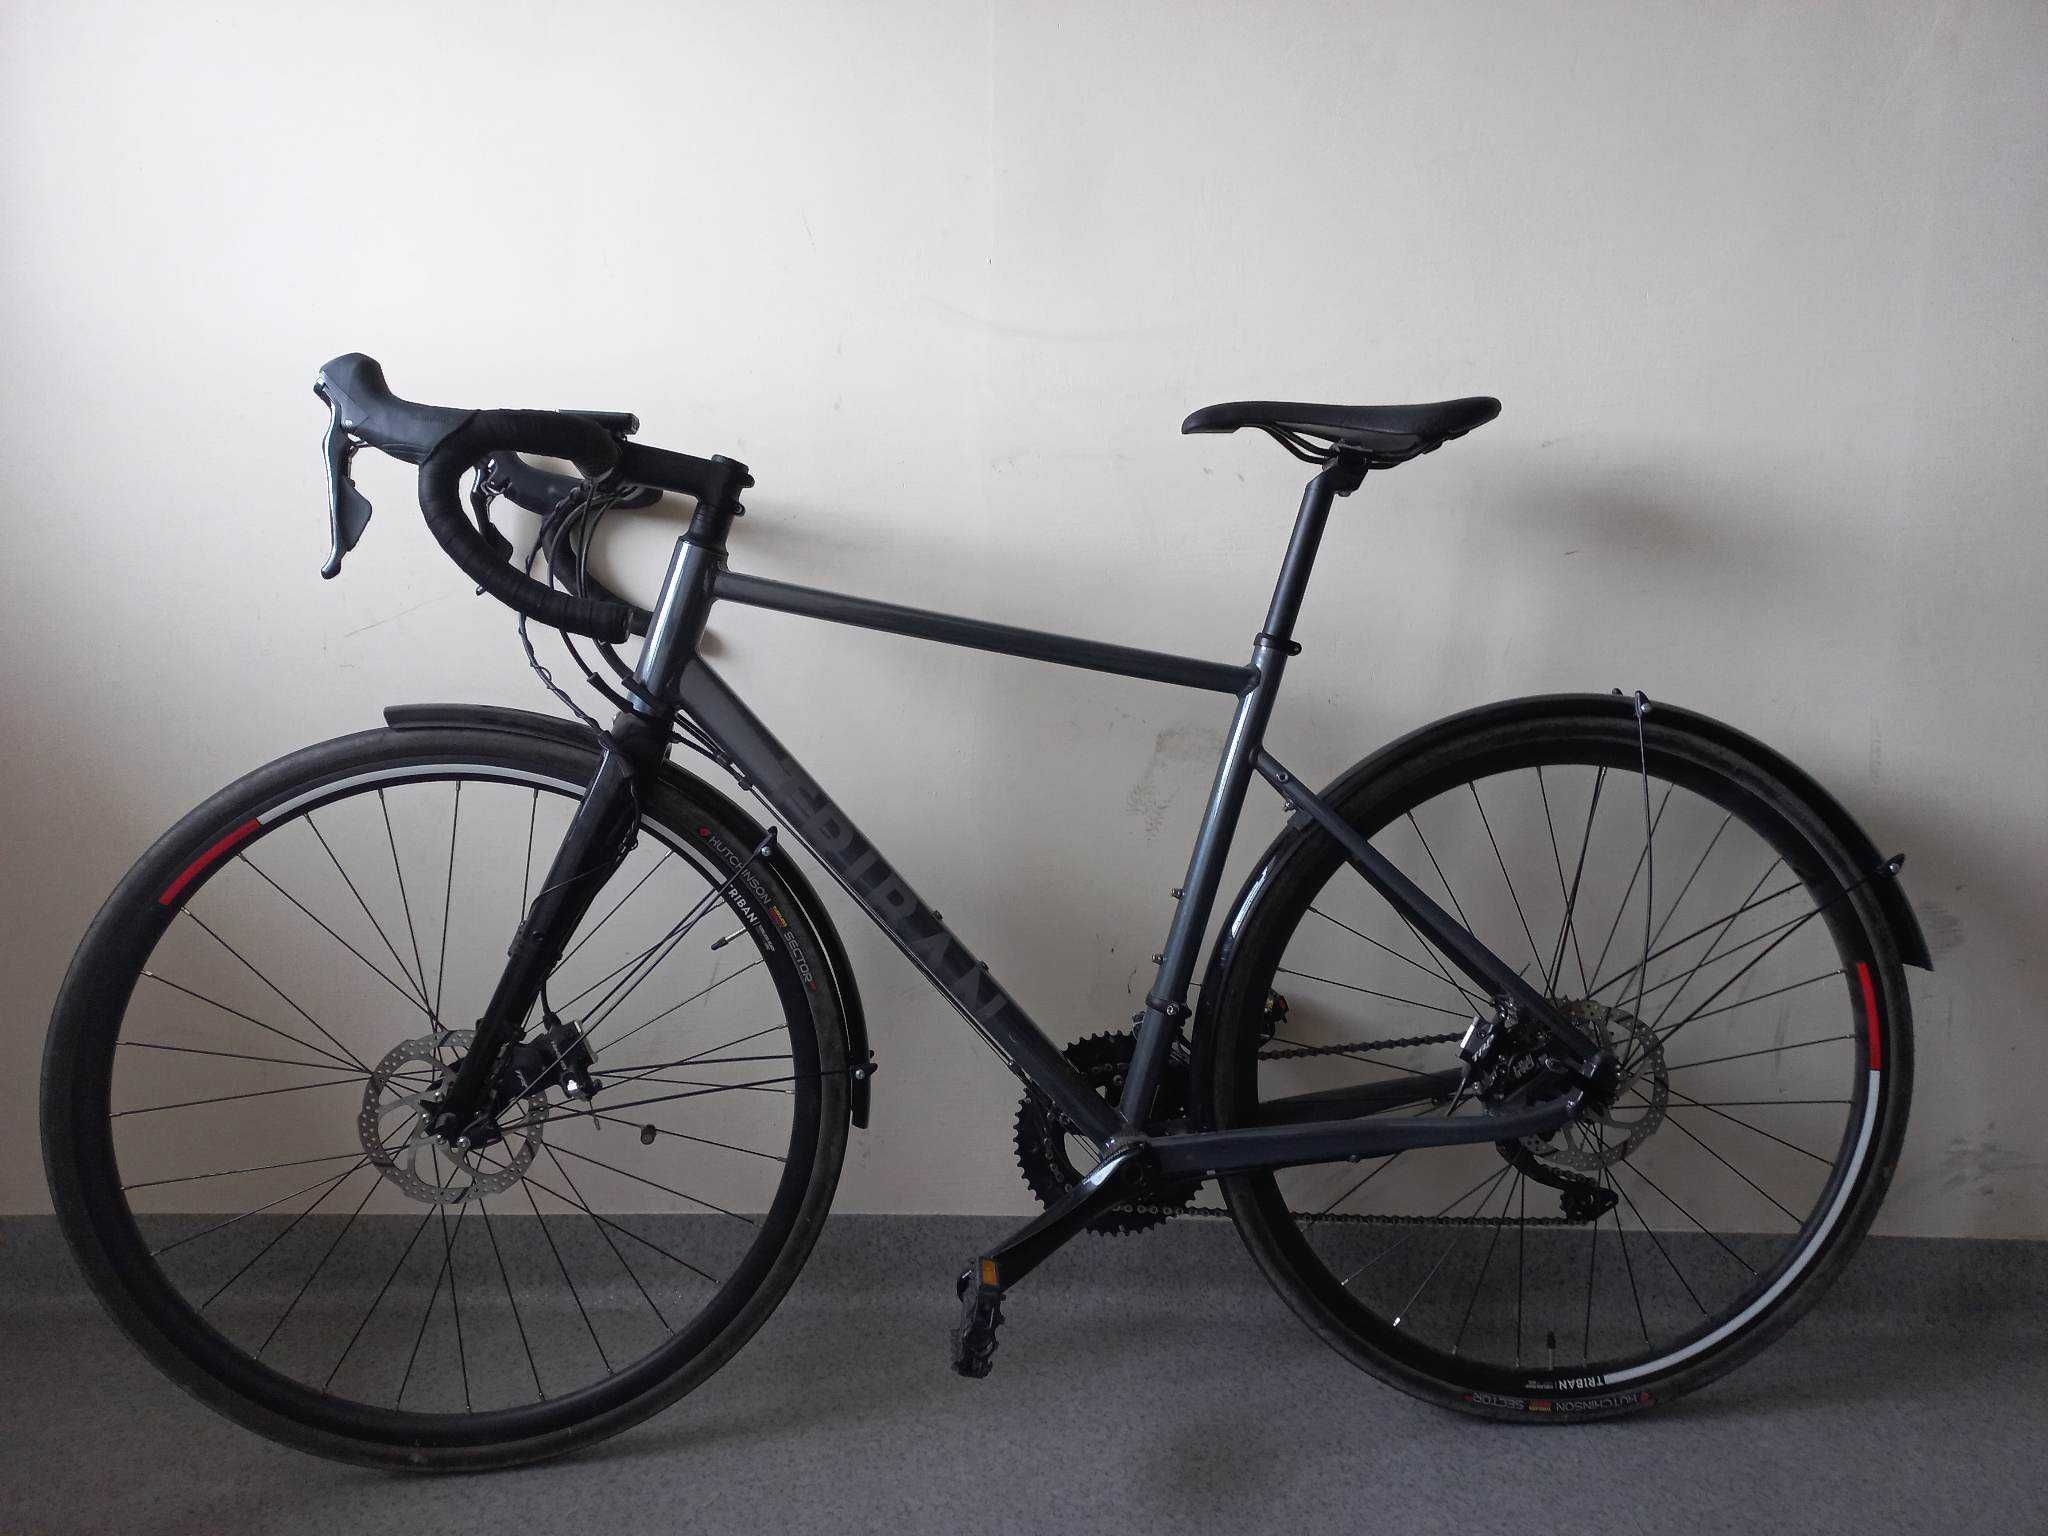 Sprzedam nowy rower szosa gravel Triban rc520 ltd, Kraków